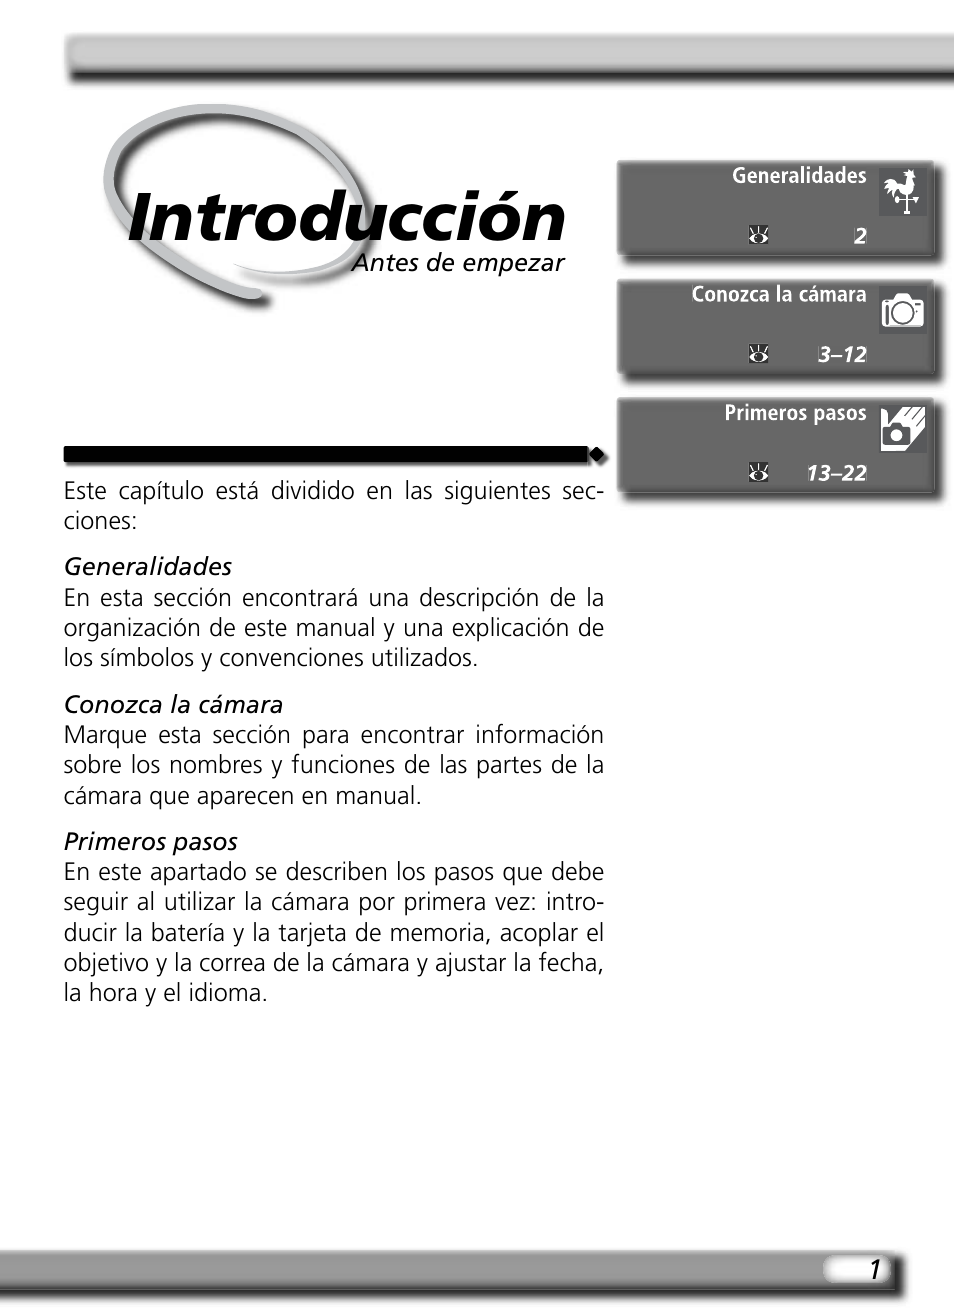 Introducción | Nikon D70 Manual del usuario | Página 11 / 218